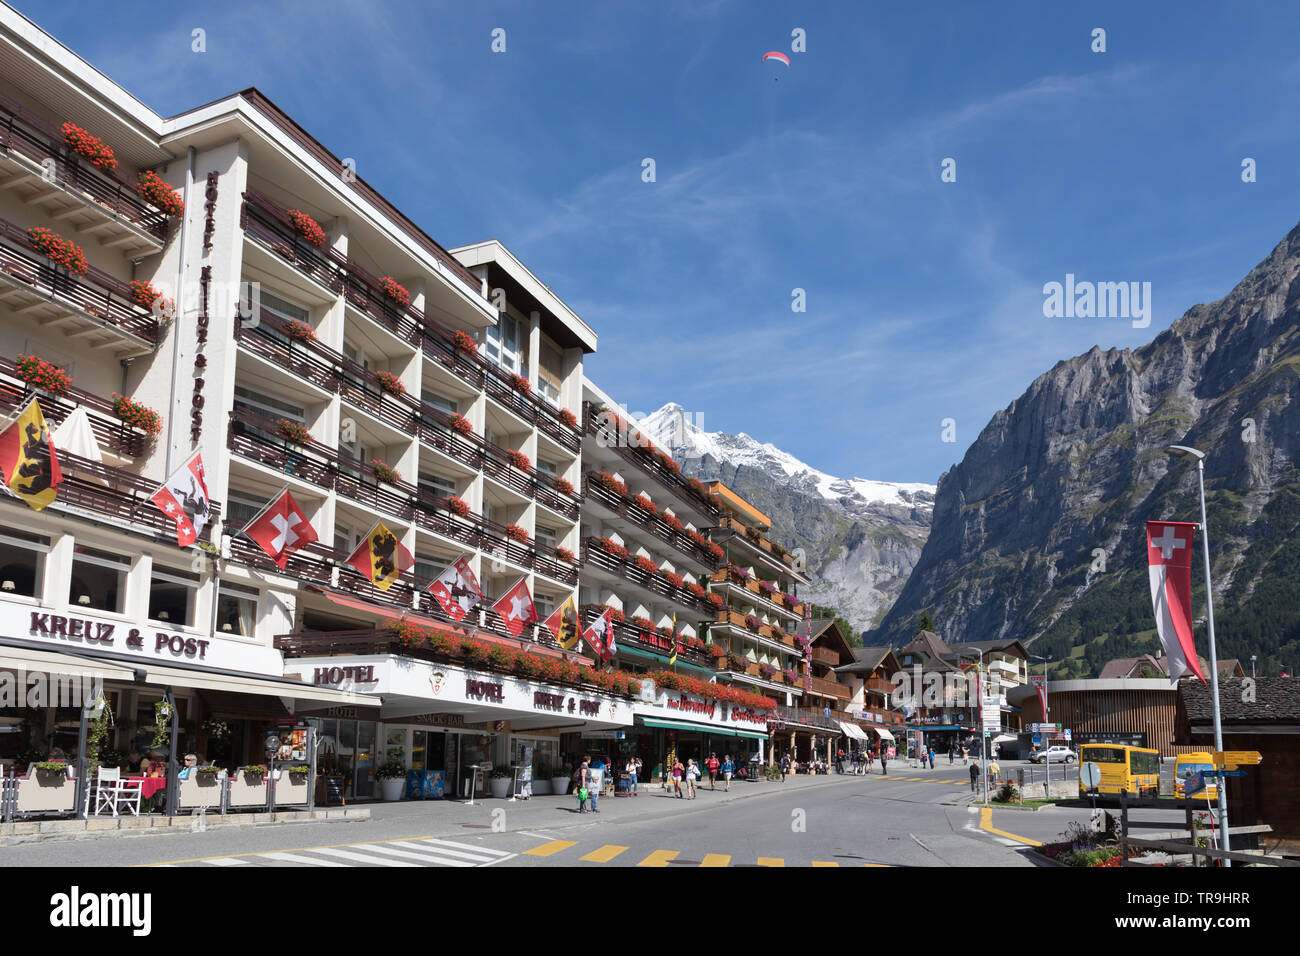 Hotel Kreuz + Post su Dorfstrasser in Svizzera al villaggio alpino di Grindelwald. Questa è una popolare attrazione turistica in estate e per gli sport invernali. Foto Stock